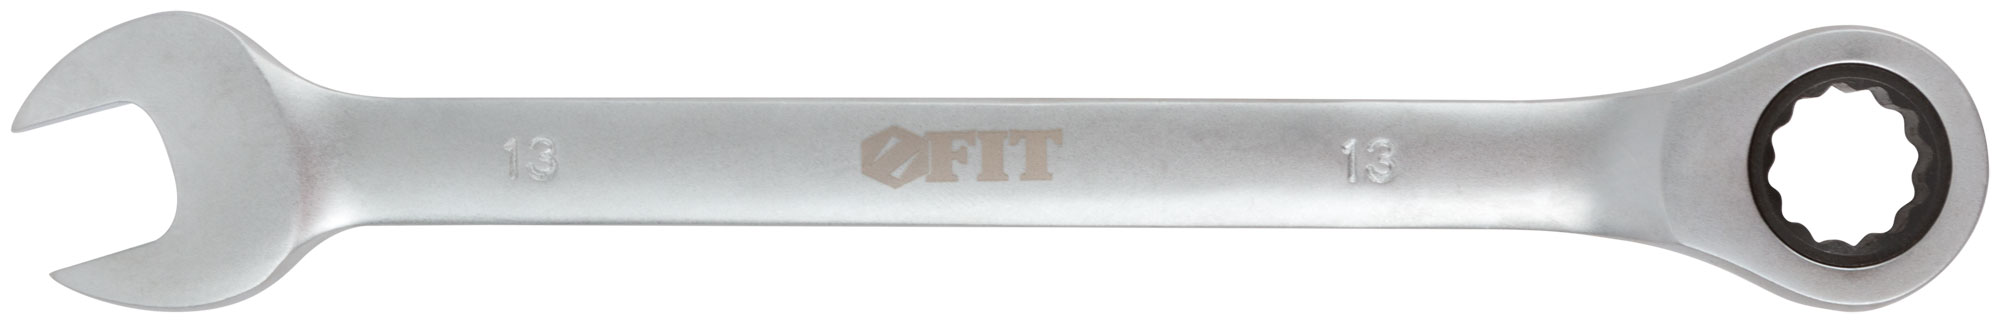 Ключ комбинированный трещоточный, 13 мм. FIT 63463 трещоточный реверсивный комбинированный ключ hortz